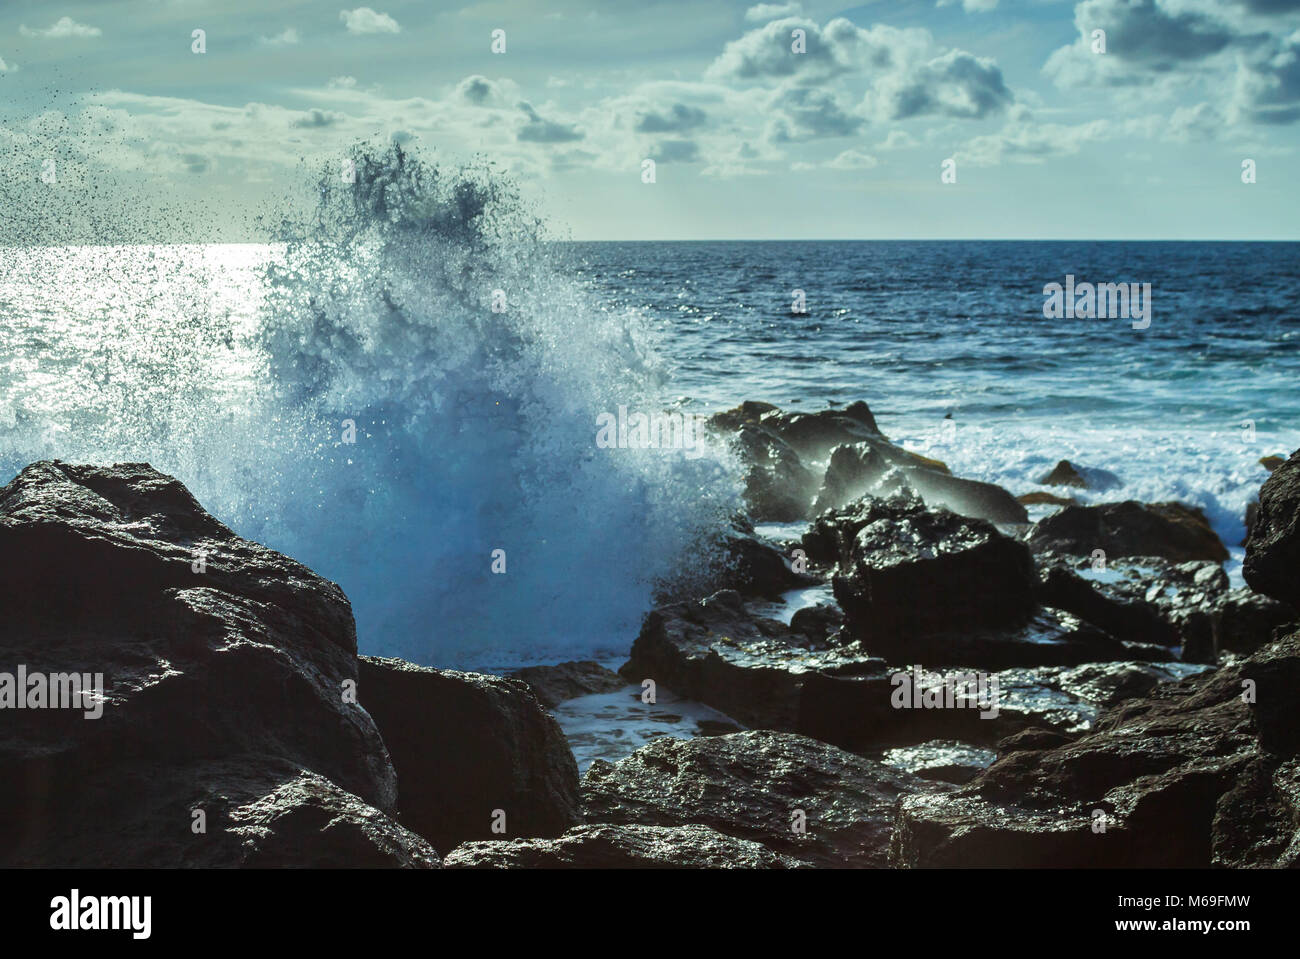 Areia Movediça No Oceano Índico Imagem de Stock - Imagem de praia, arenoso:  112344503